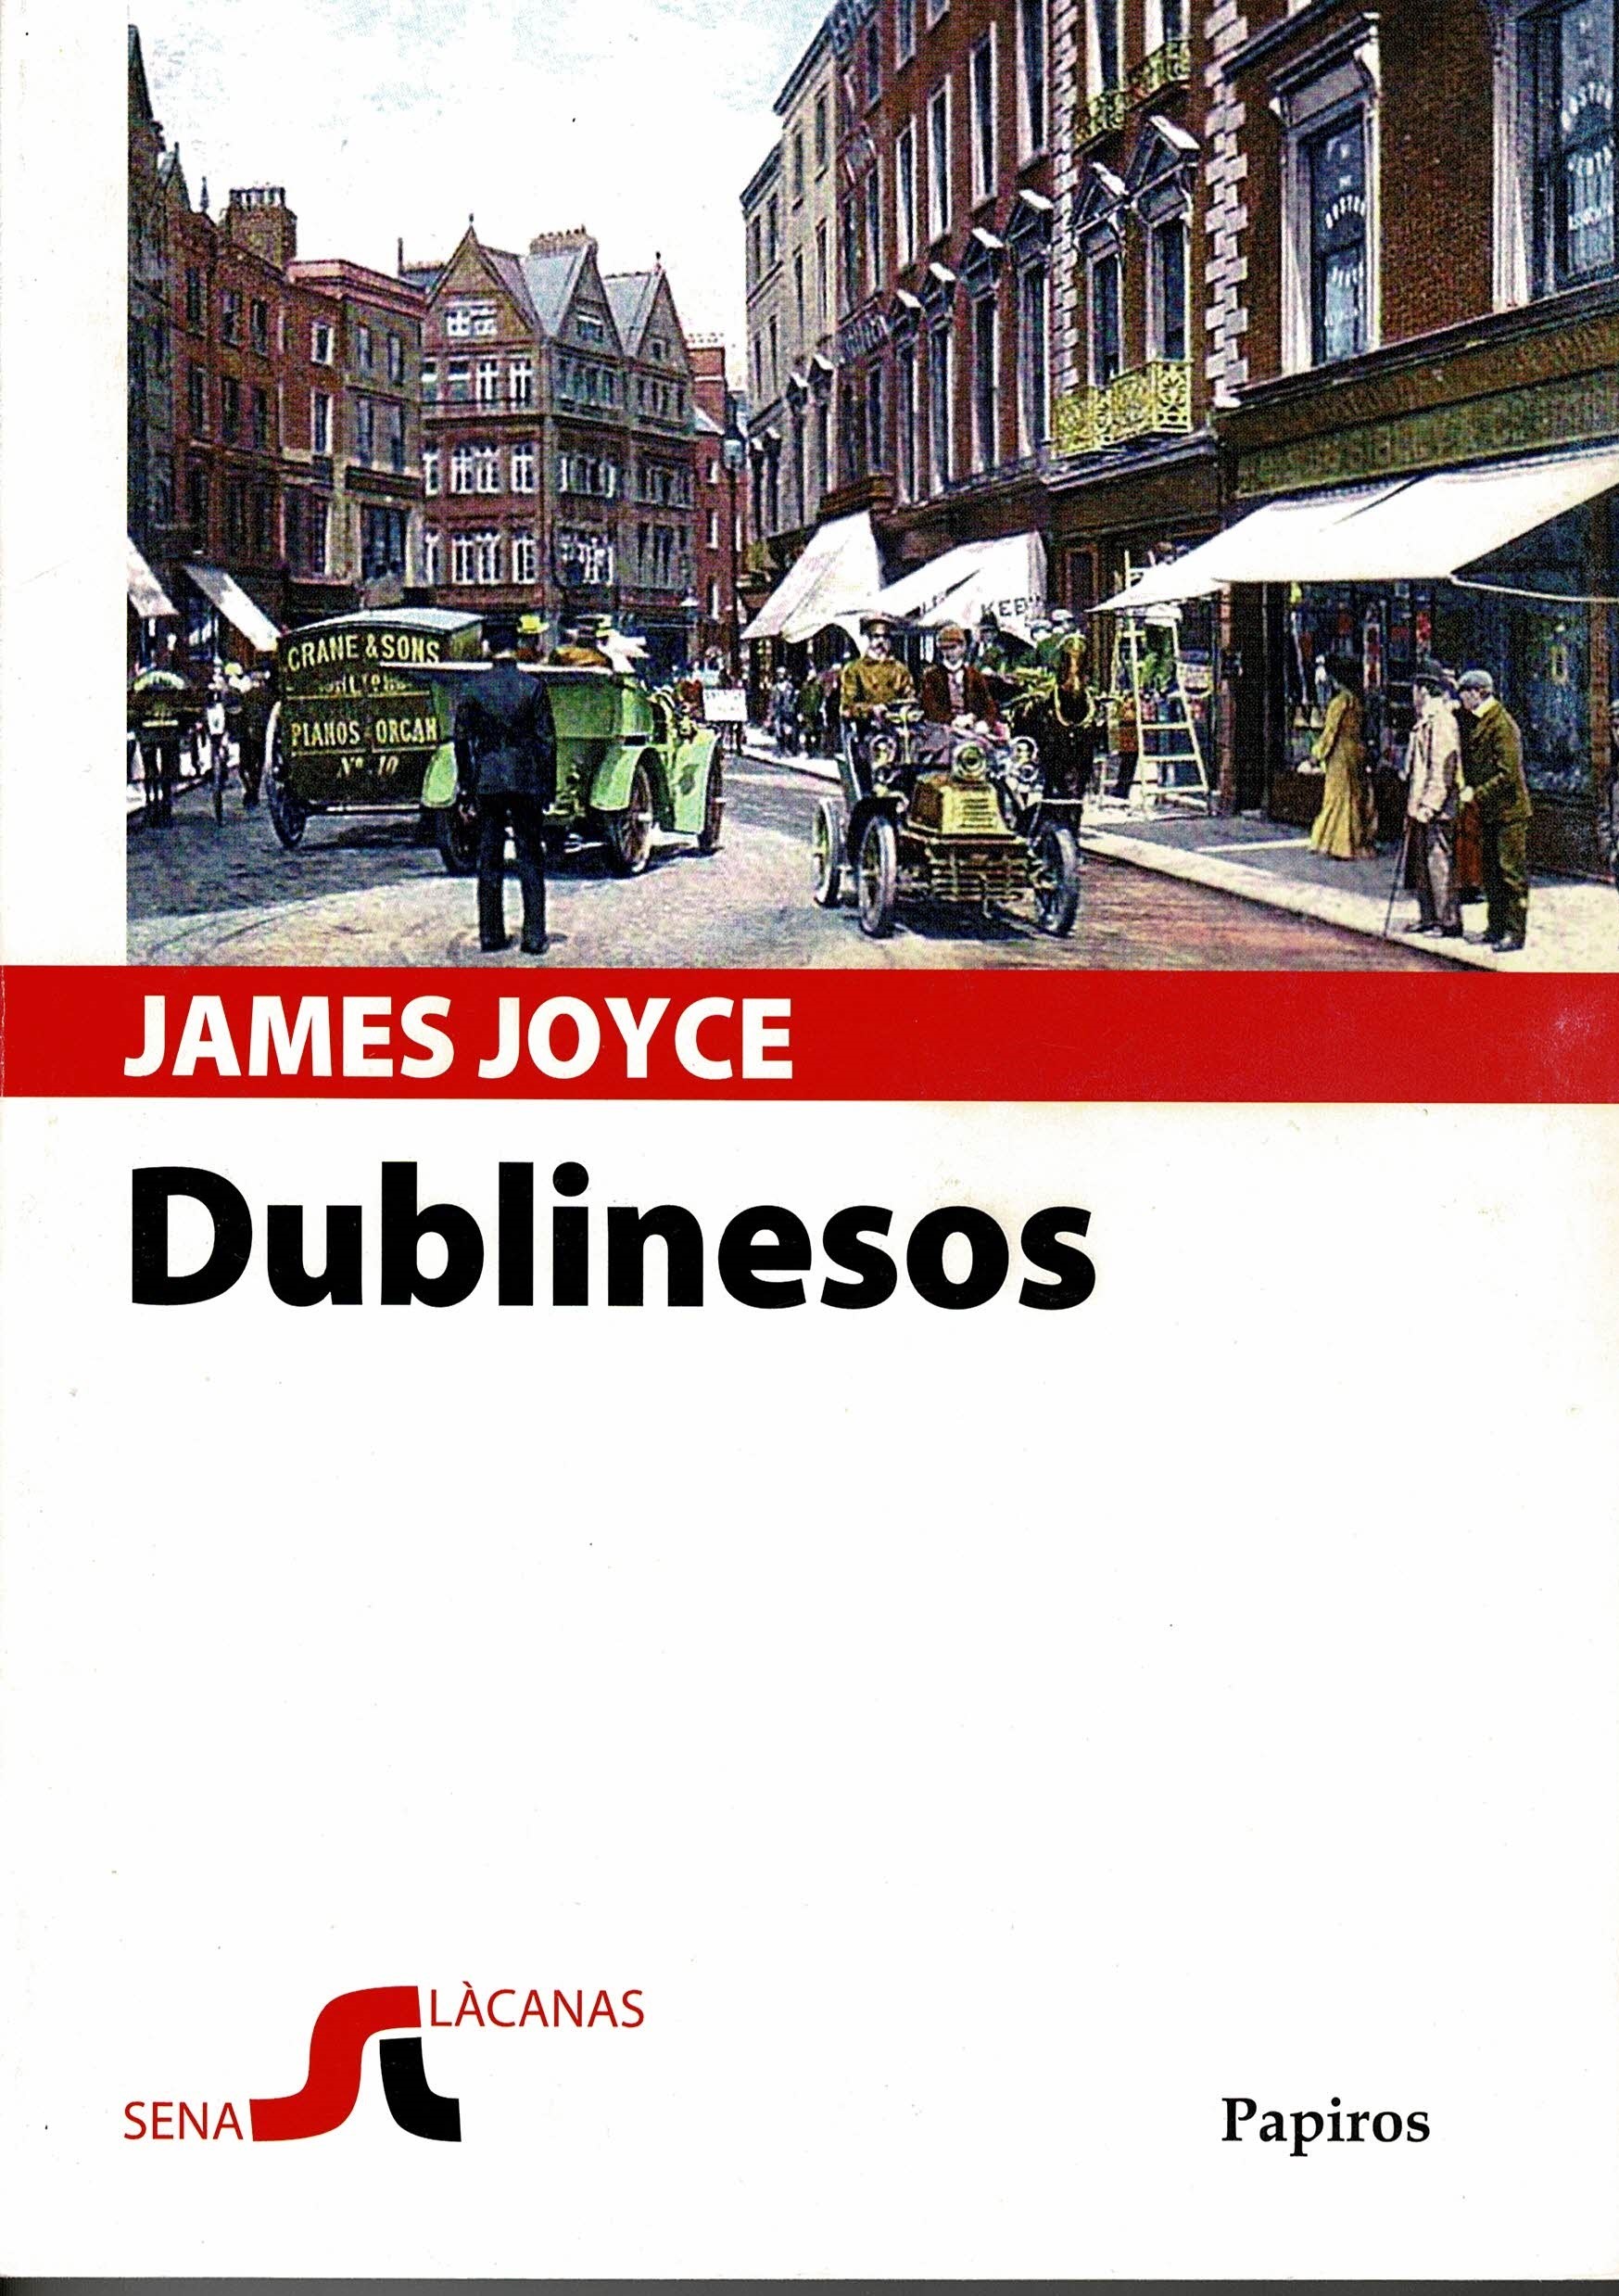 Tradutziones in limba sarda: "Dublinesos", de James Joyce